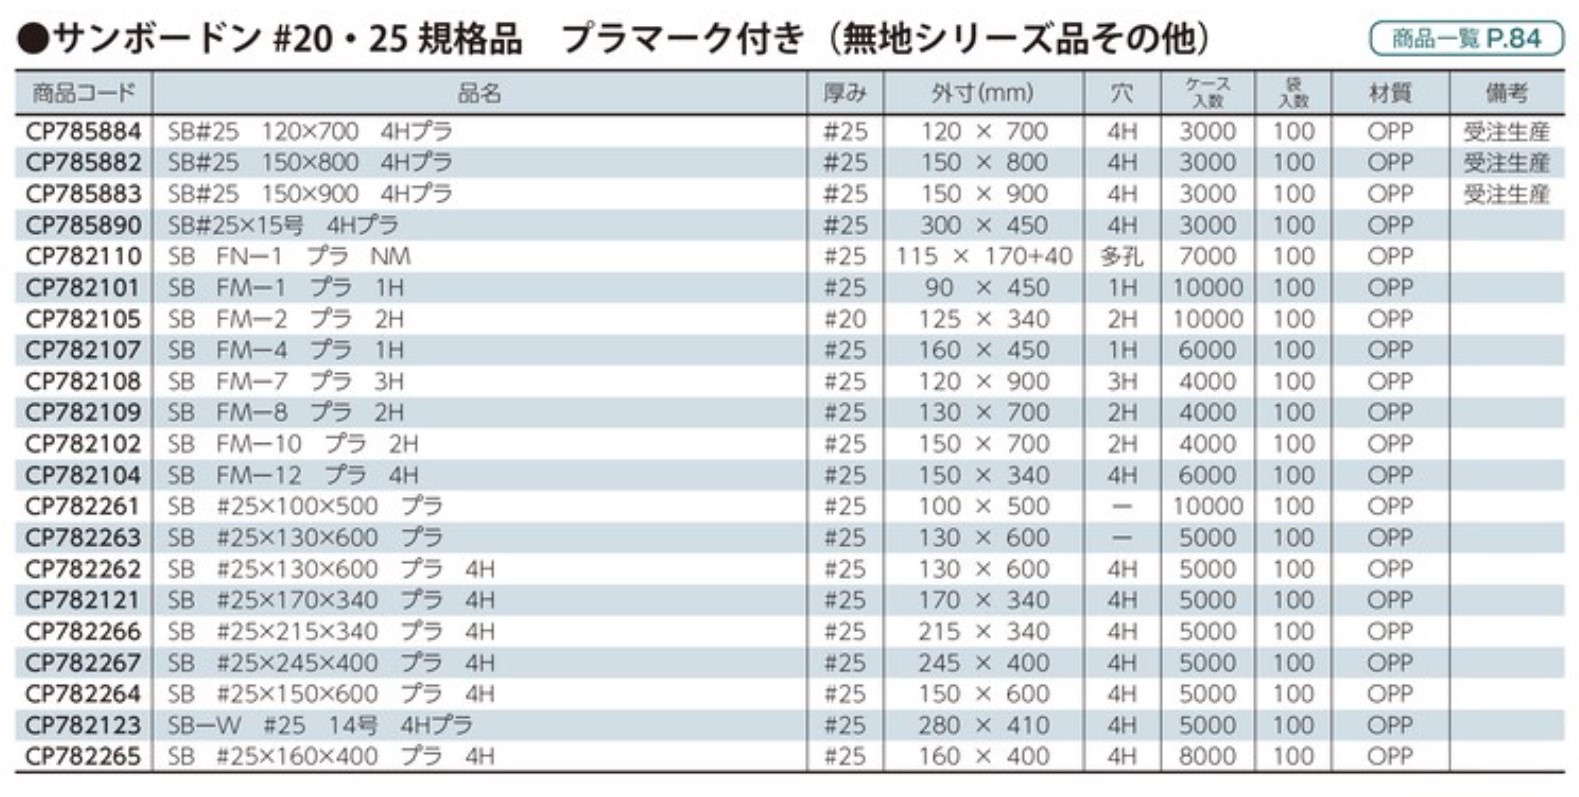 エフピコチューパ サンボードン規格袋 プラ付き SB-FM-10 150×700 【2H